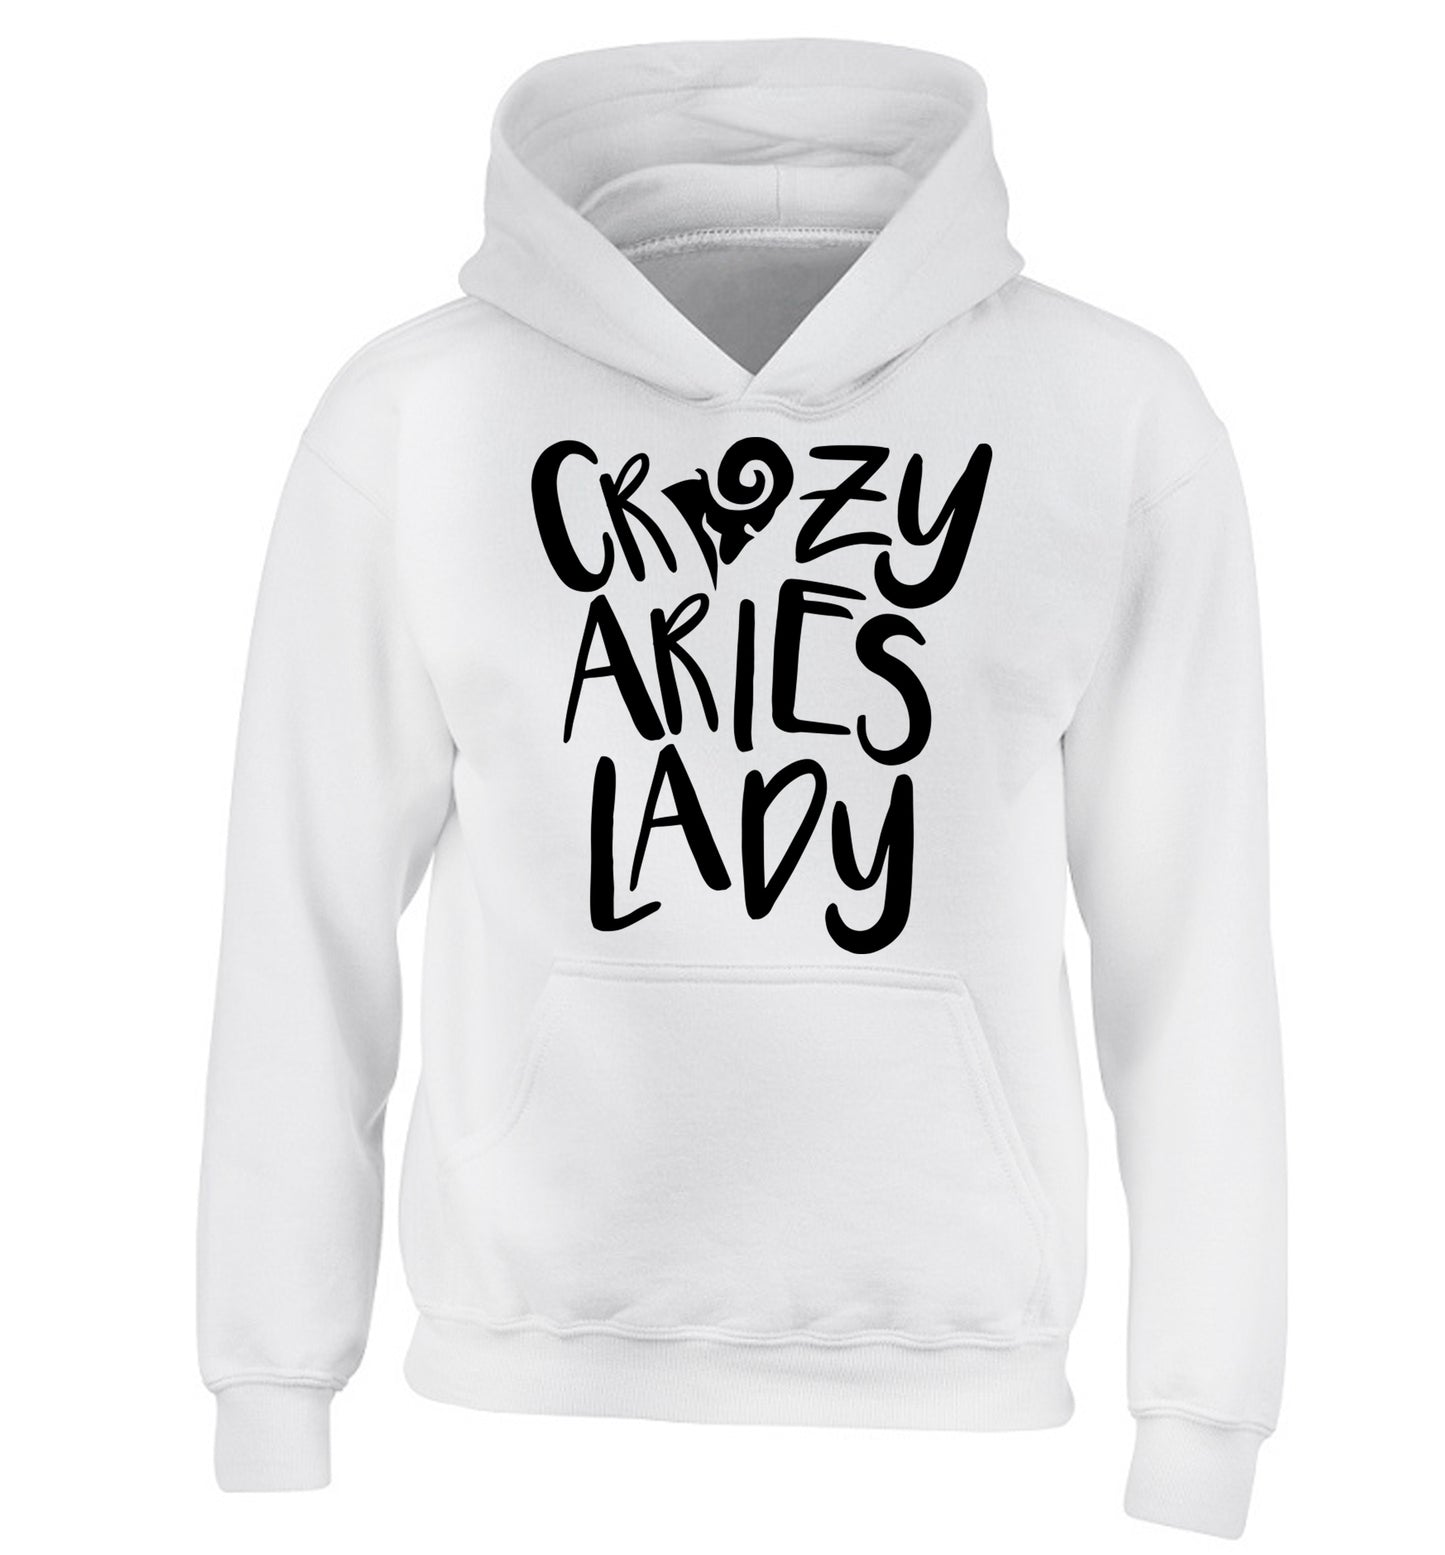 Crazy aries lady children's white hoodie 12-13 Years